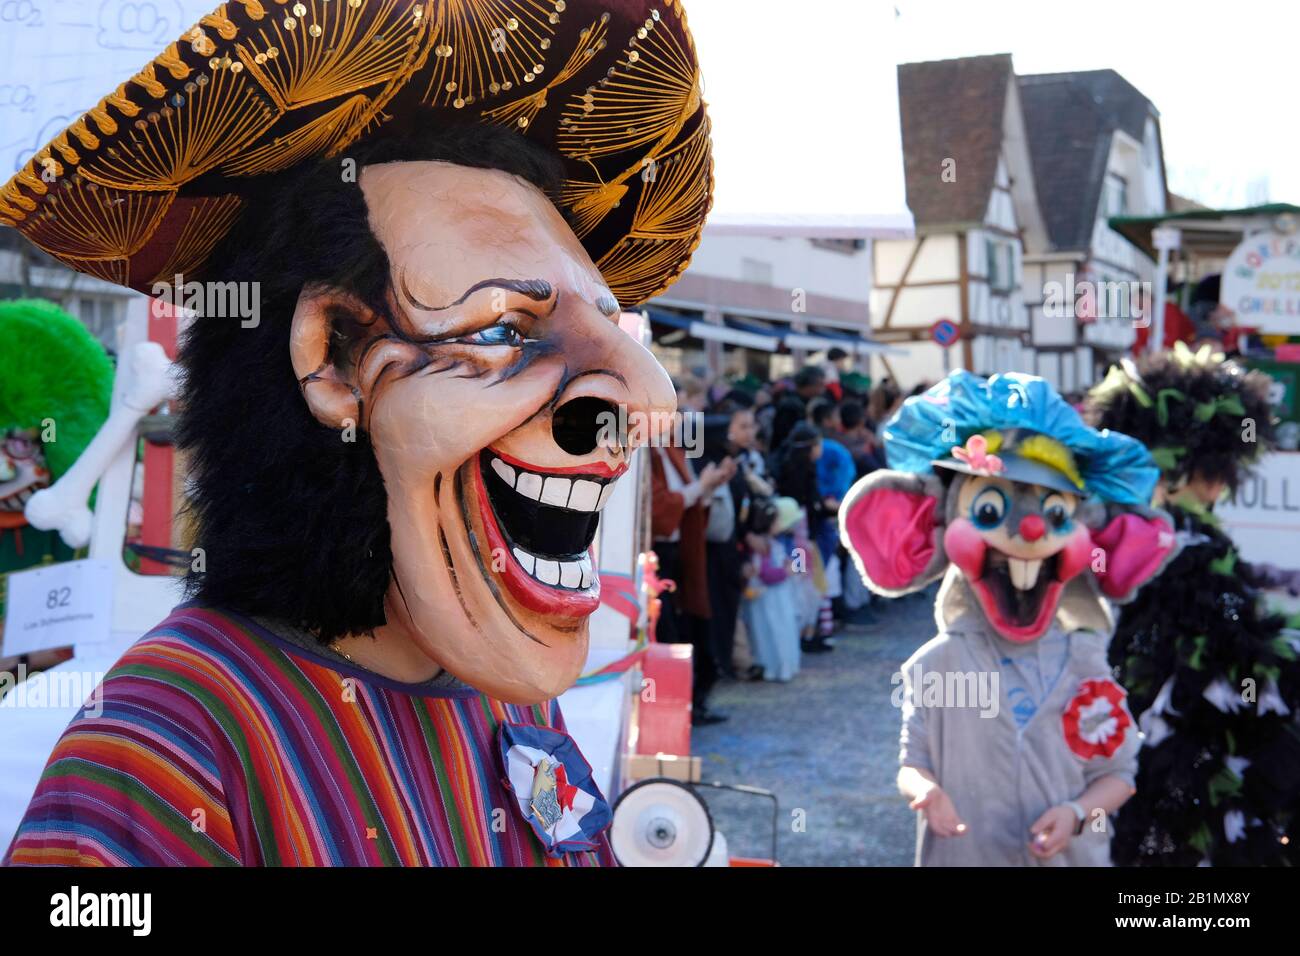 Portrait d'un participant portant un masque au carnaval d'Allschwil, Bâle landschaft, Suisse Banque D'Images